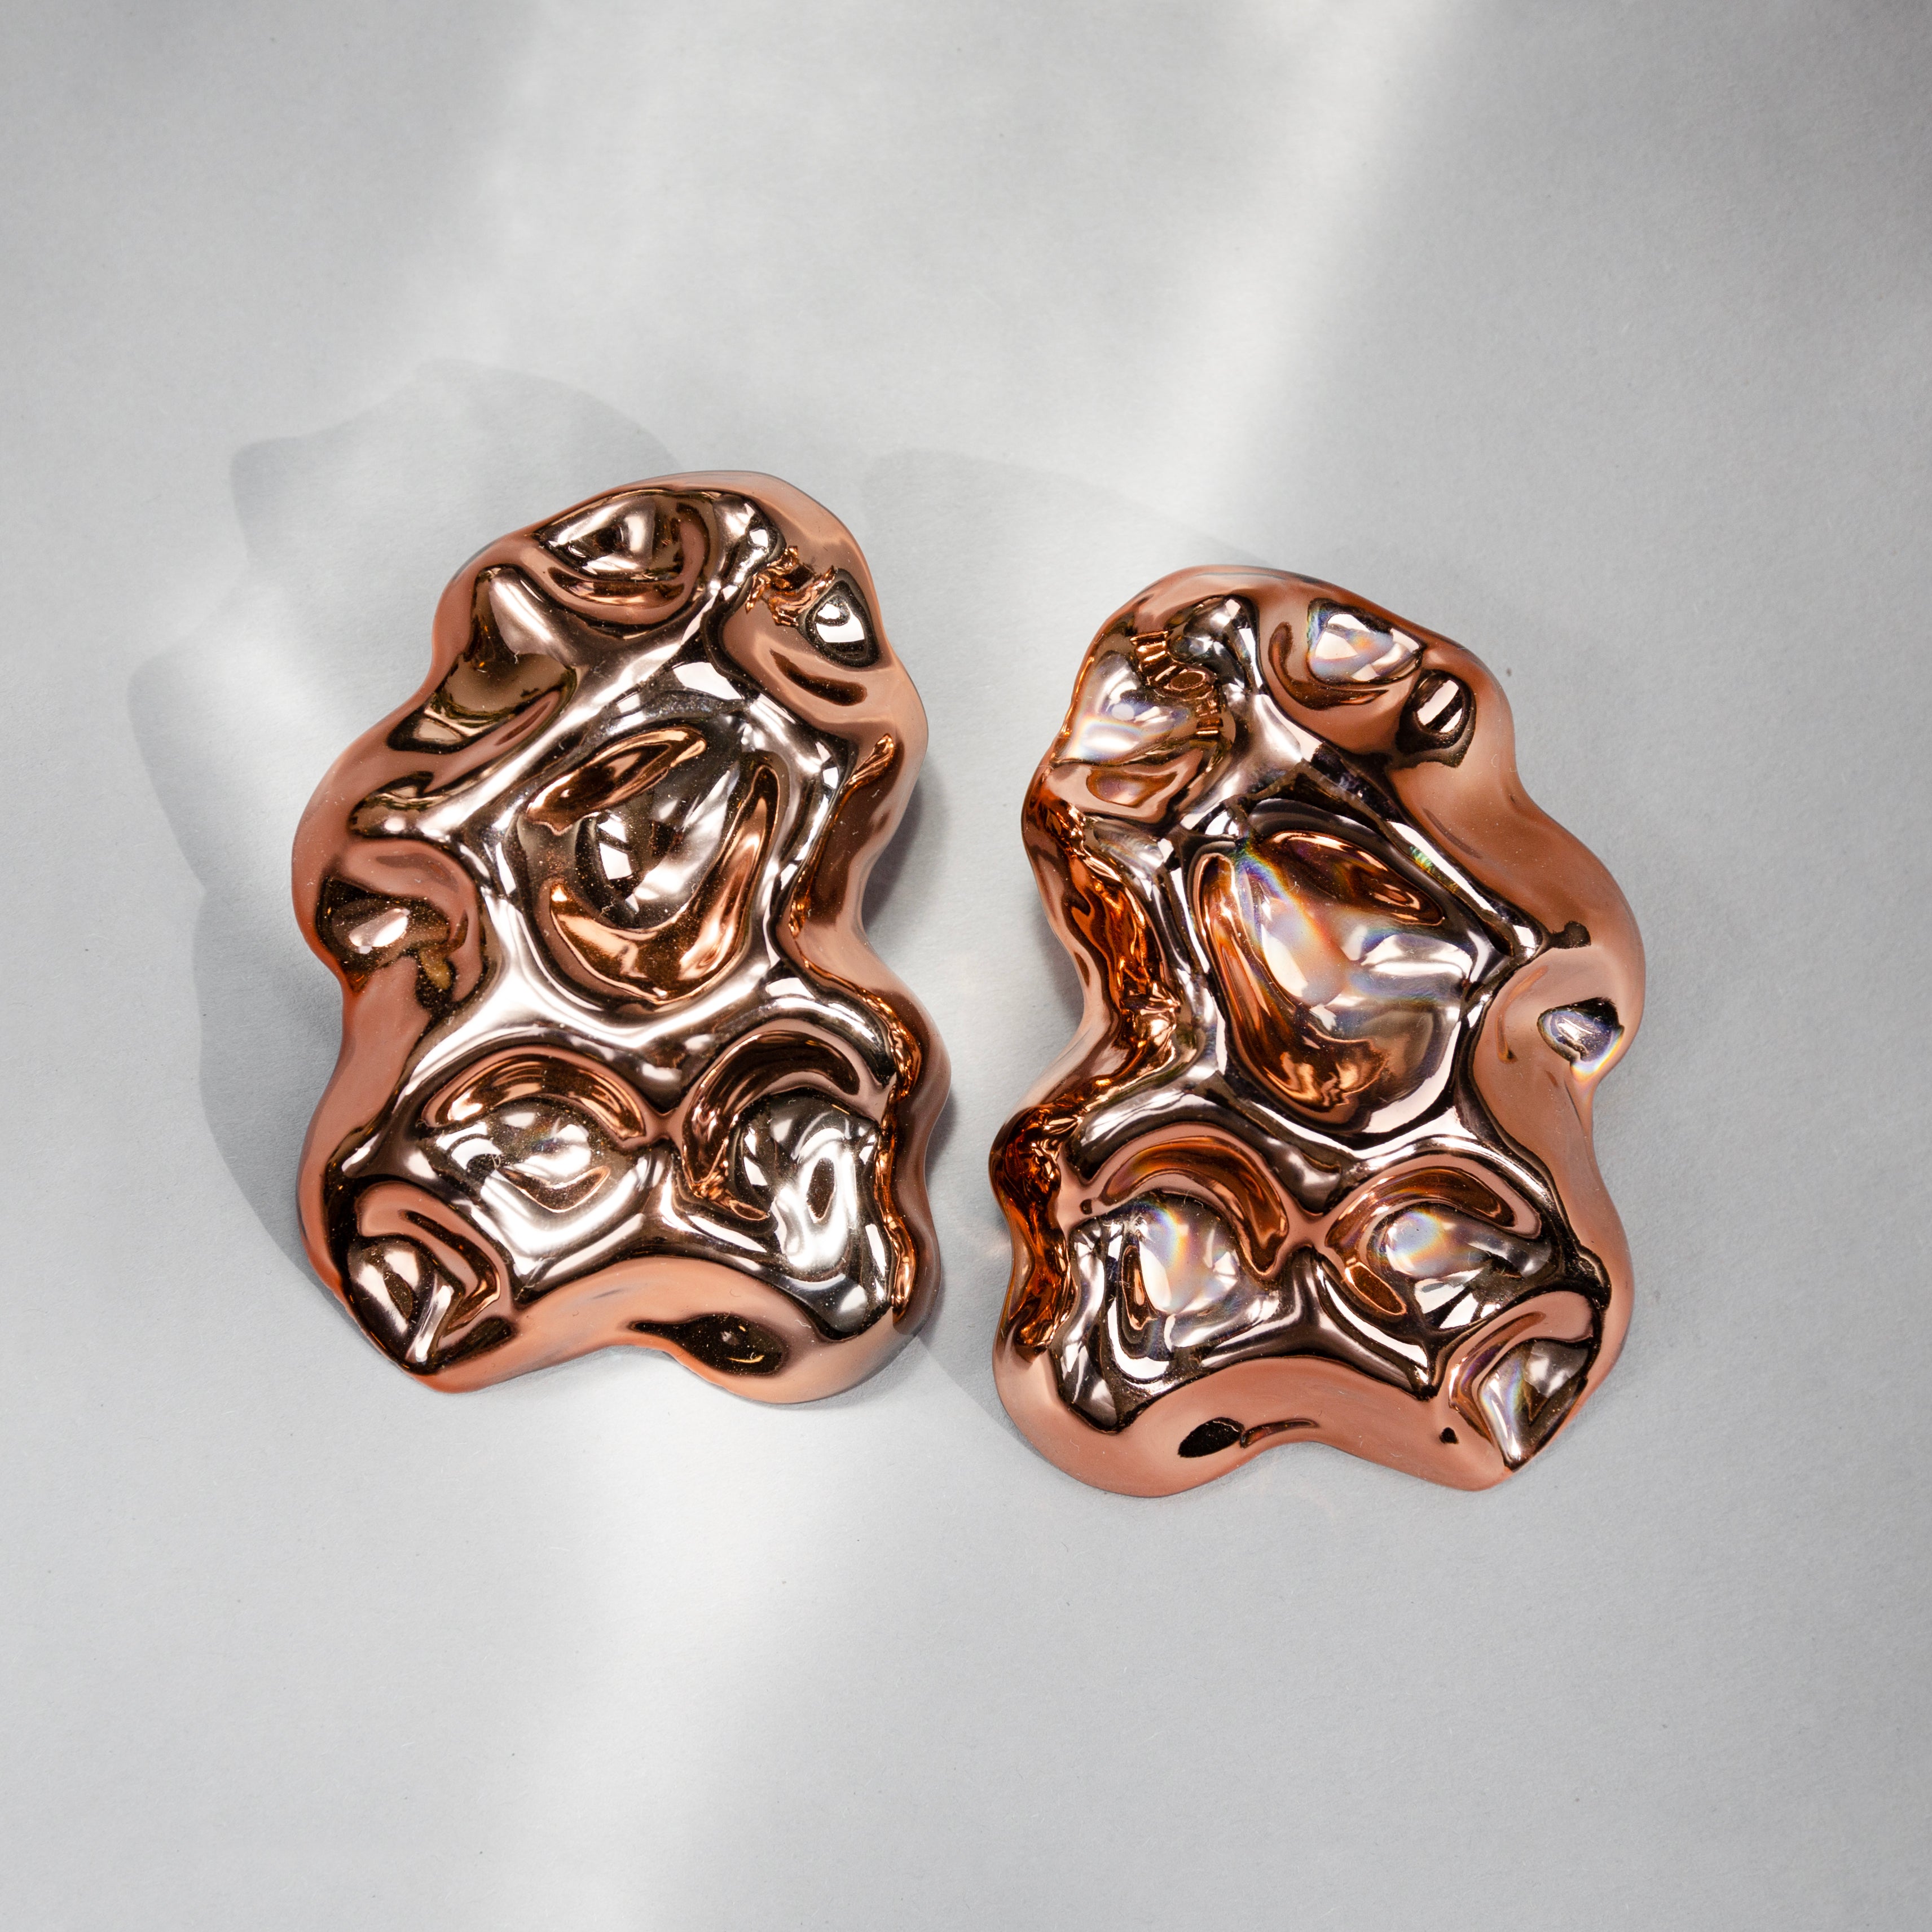 ENNE HAUTE small bronze earrings